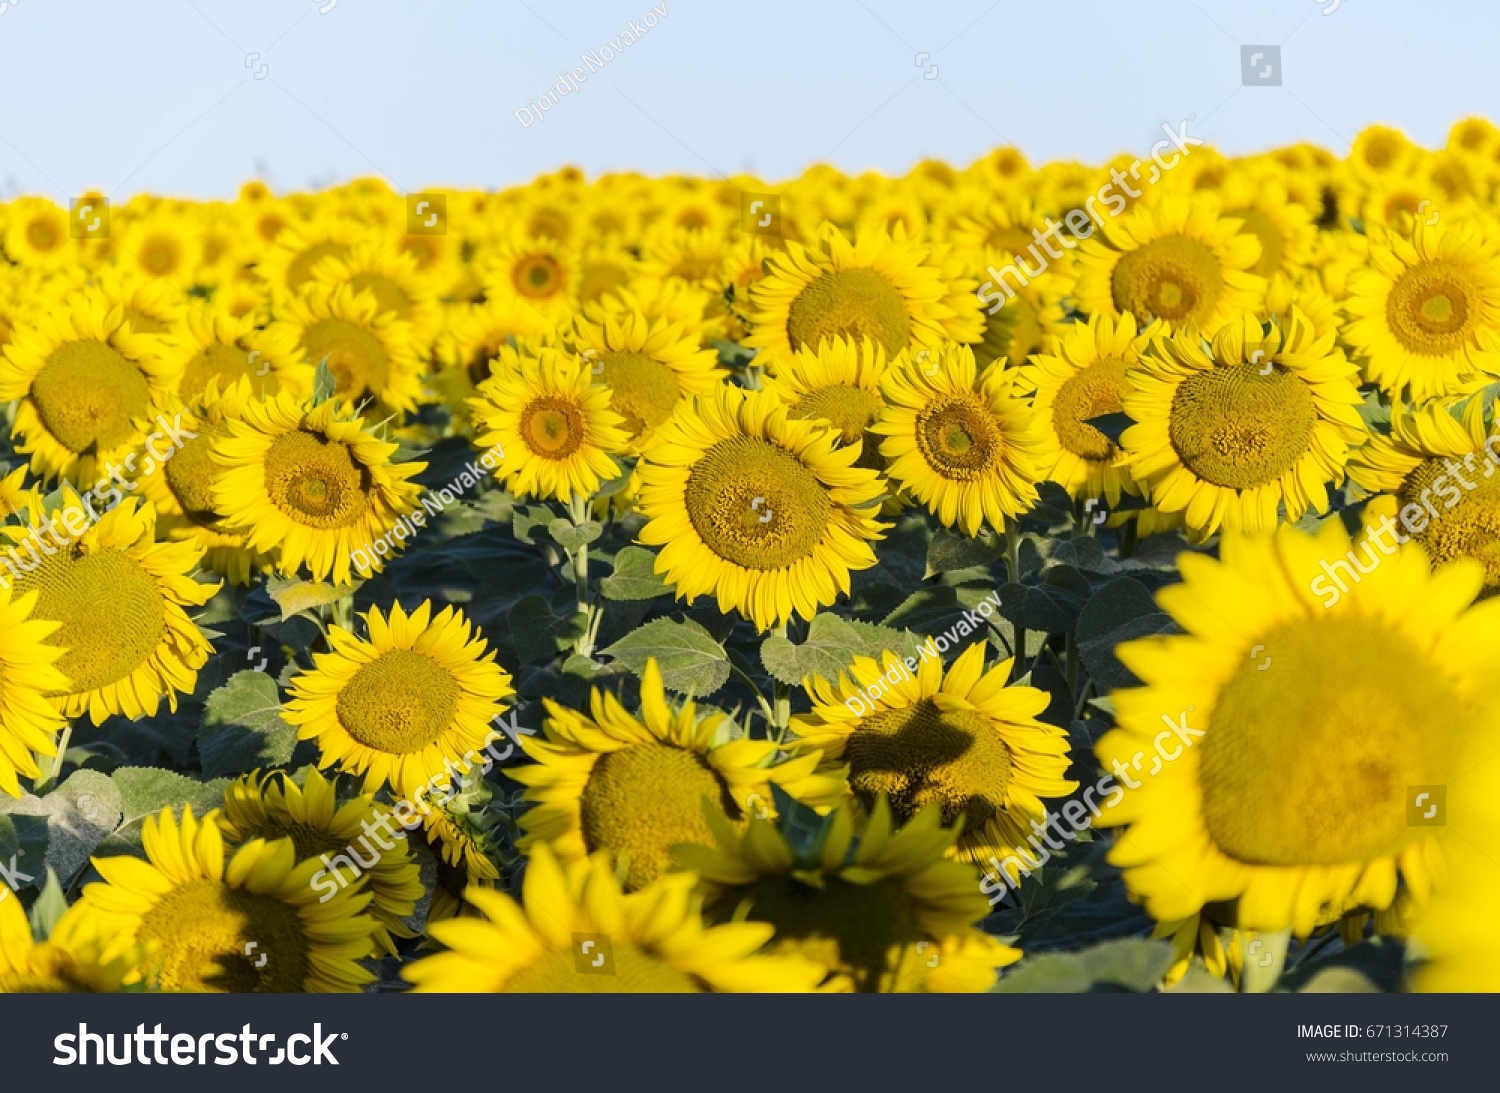 sunflowers #671314387